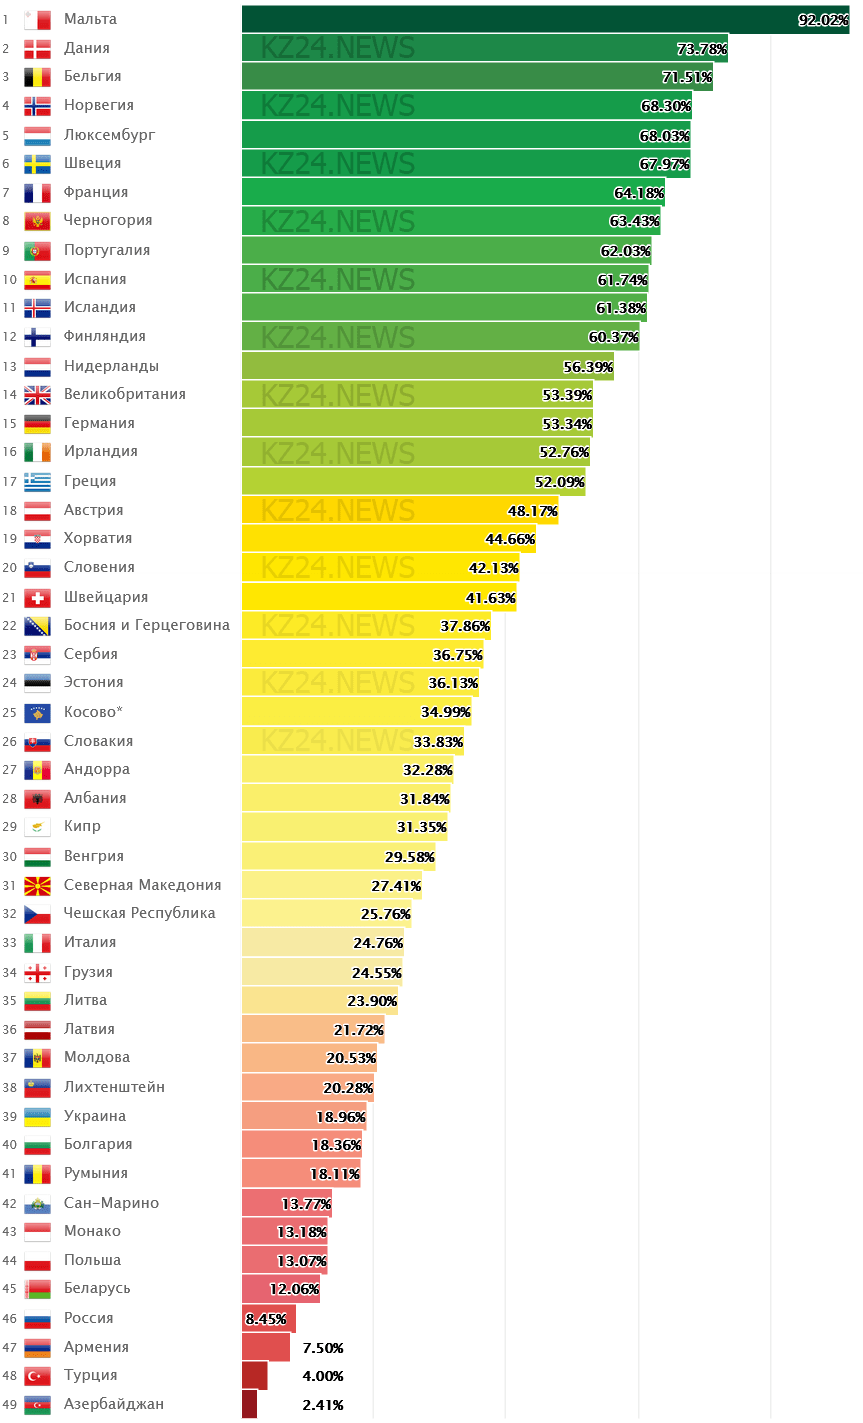 Таблица качества жизни ЛГБТ по странам